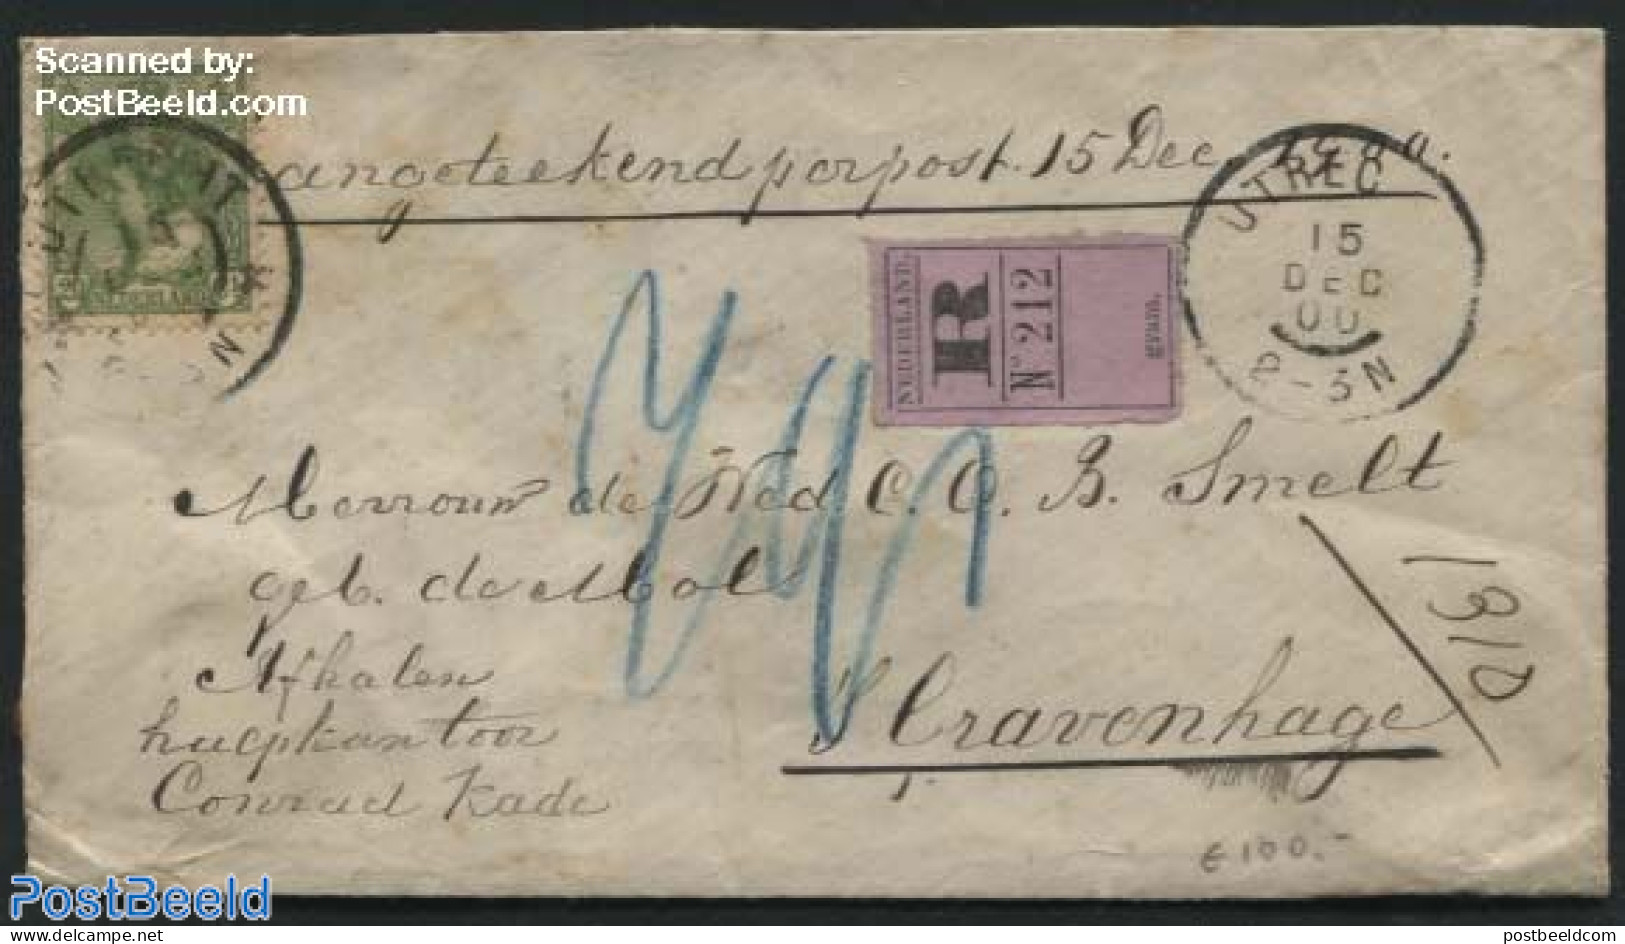 Netherlands 1900 Registered Letter With NVPH No. 68, Postal History - Storia Postale